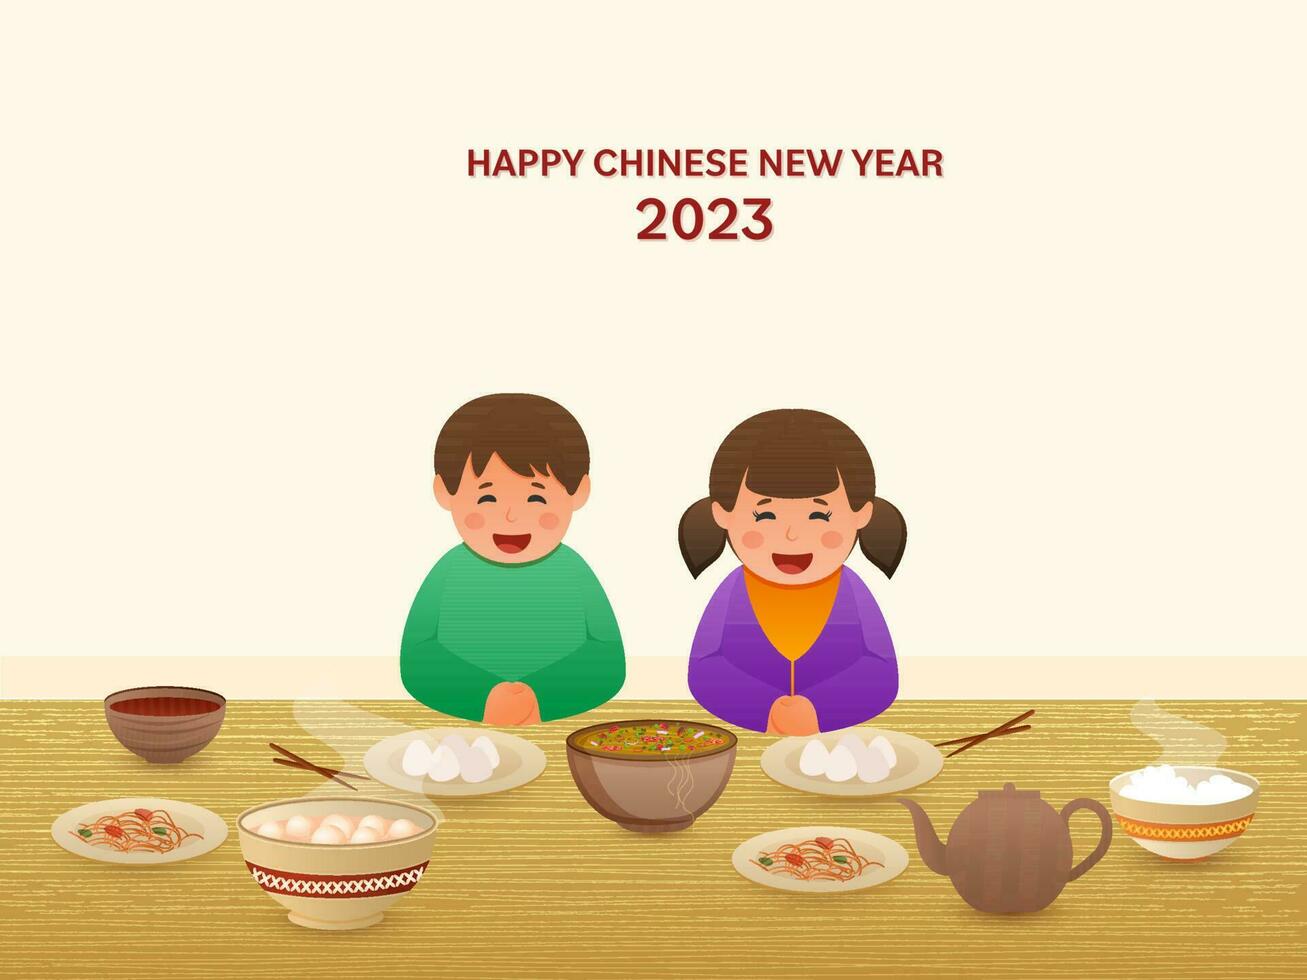 heiter Chinesisch Sitzung im Vorderseite von köstlich Mahlzeiten auf das Gelegenheit von glücklich Chinesisch Neu Jahr 2023. vektor